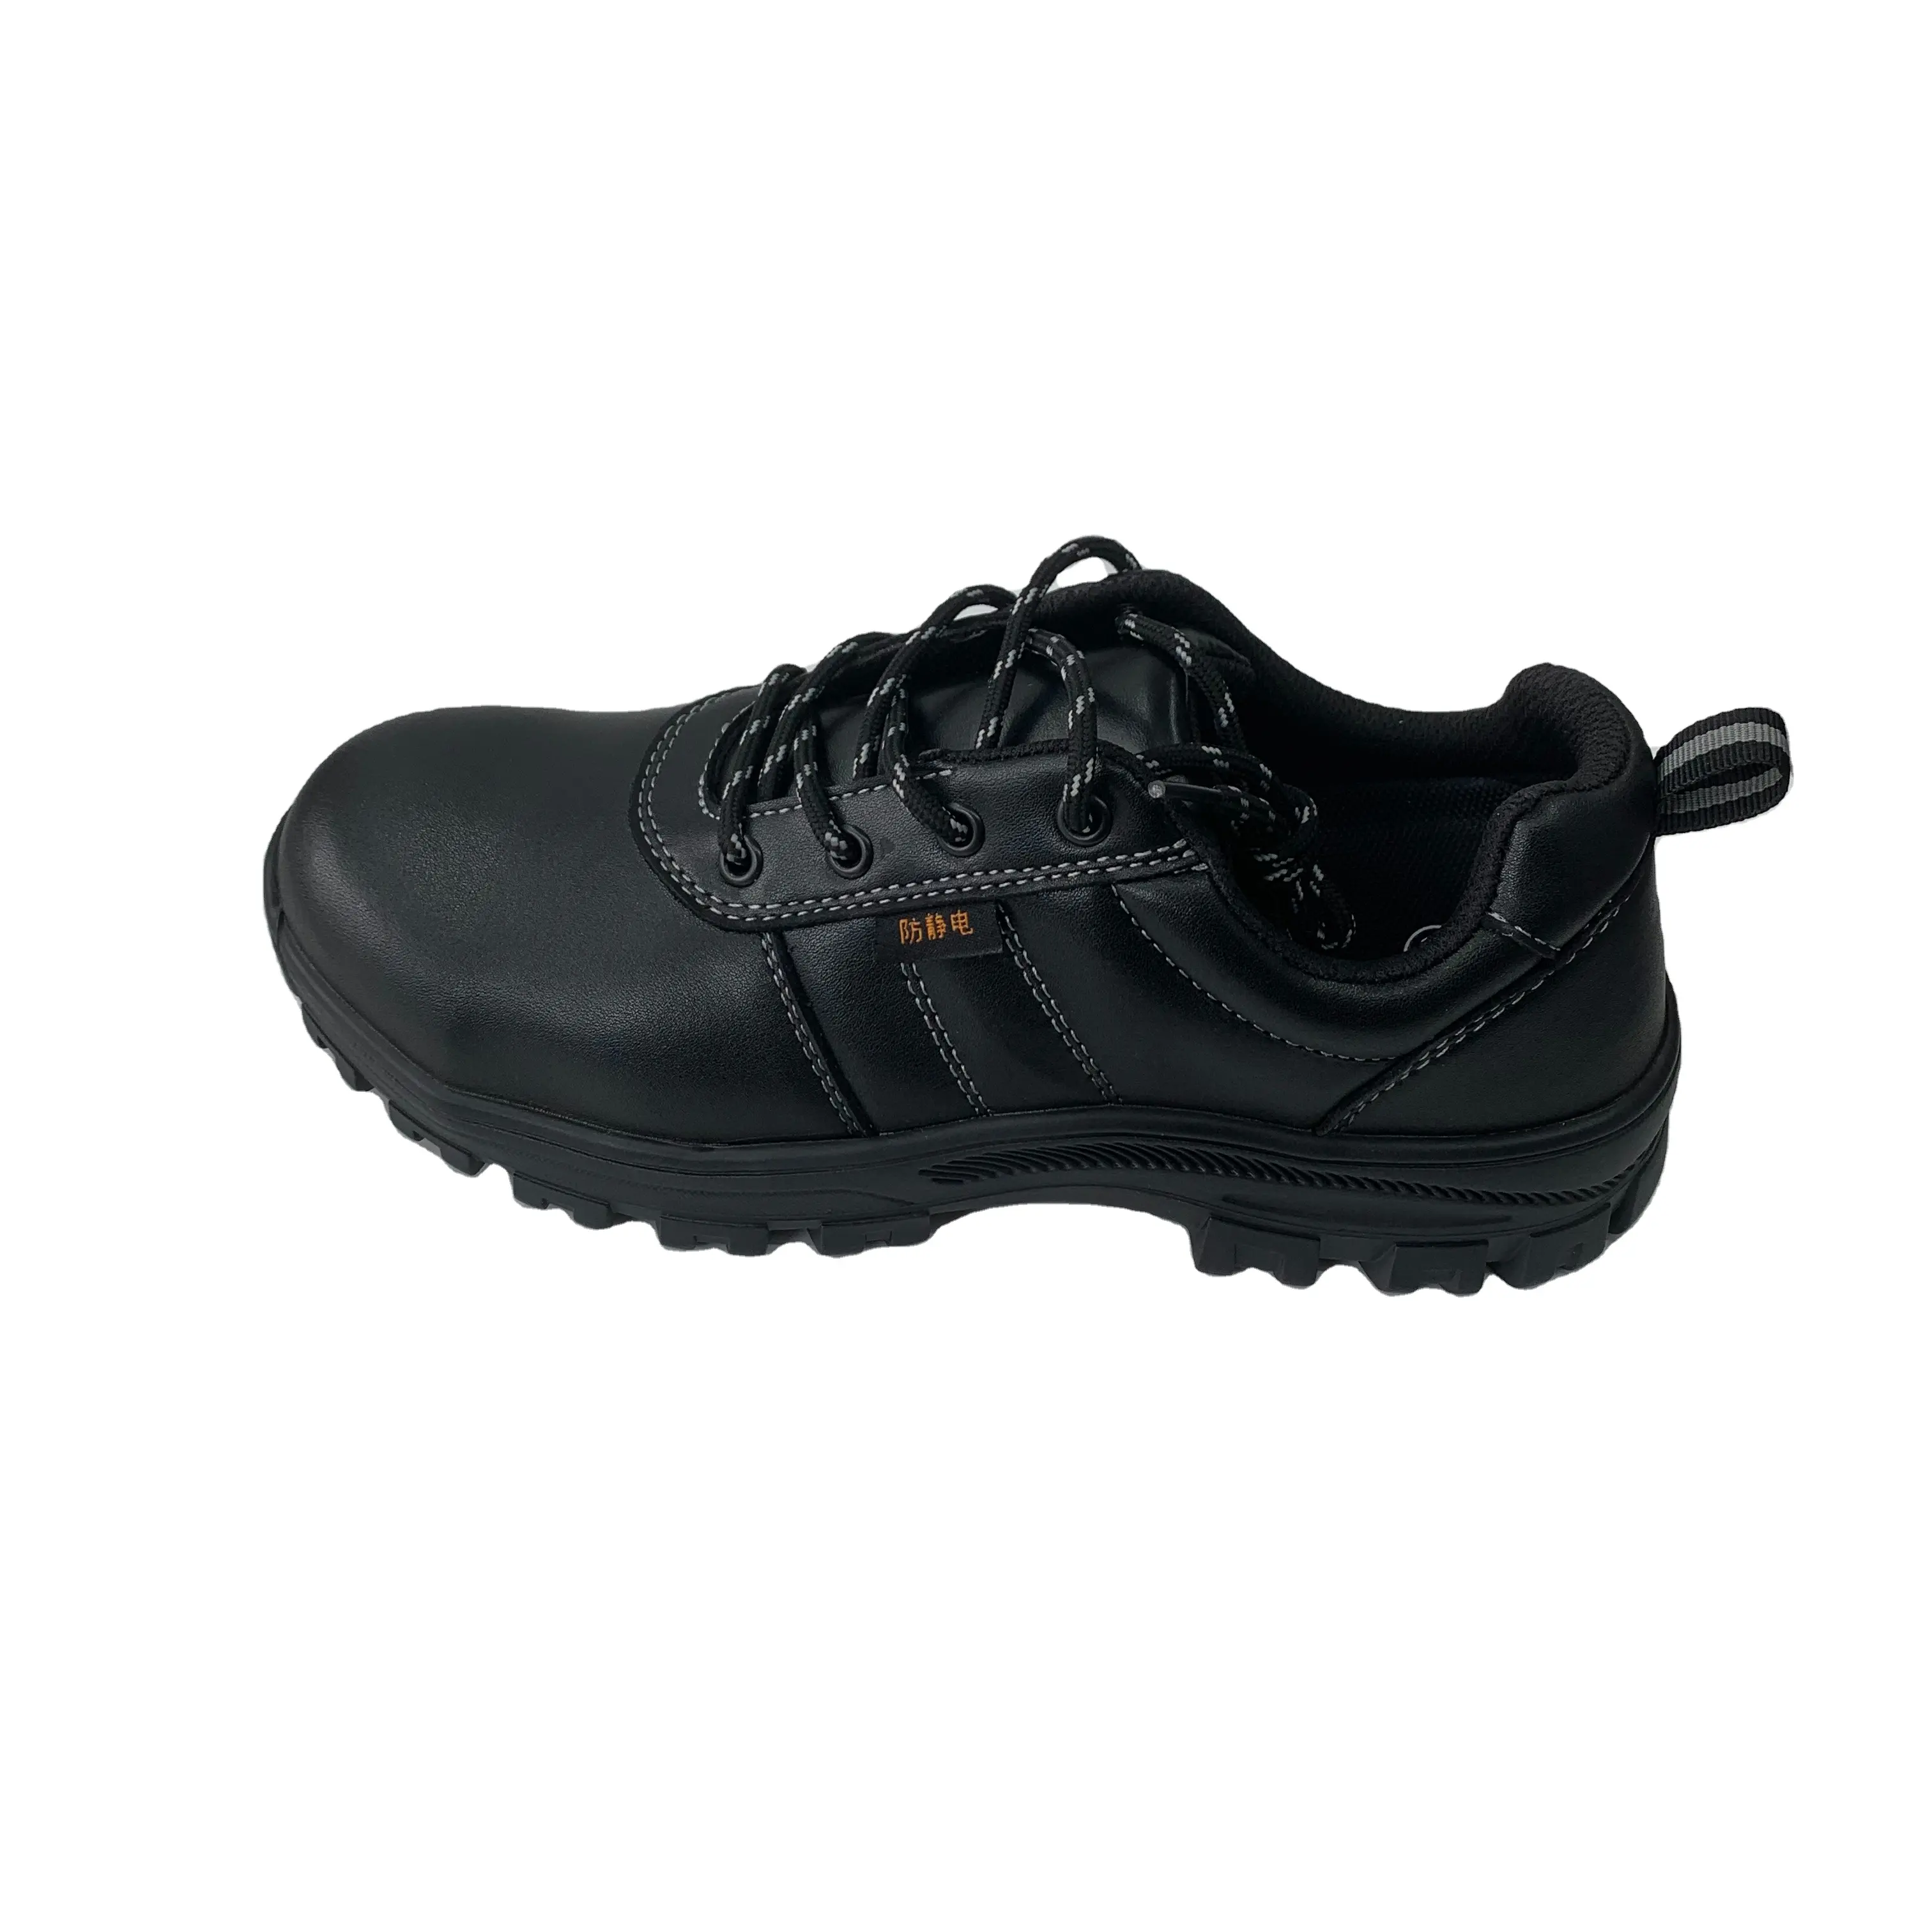 LY, gran oferta, zapatos de seguridad multifuncionales antideslizantes a prueba de perforaciones para hombres, botas con puntera de acero